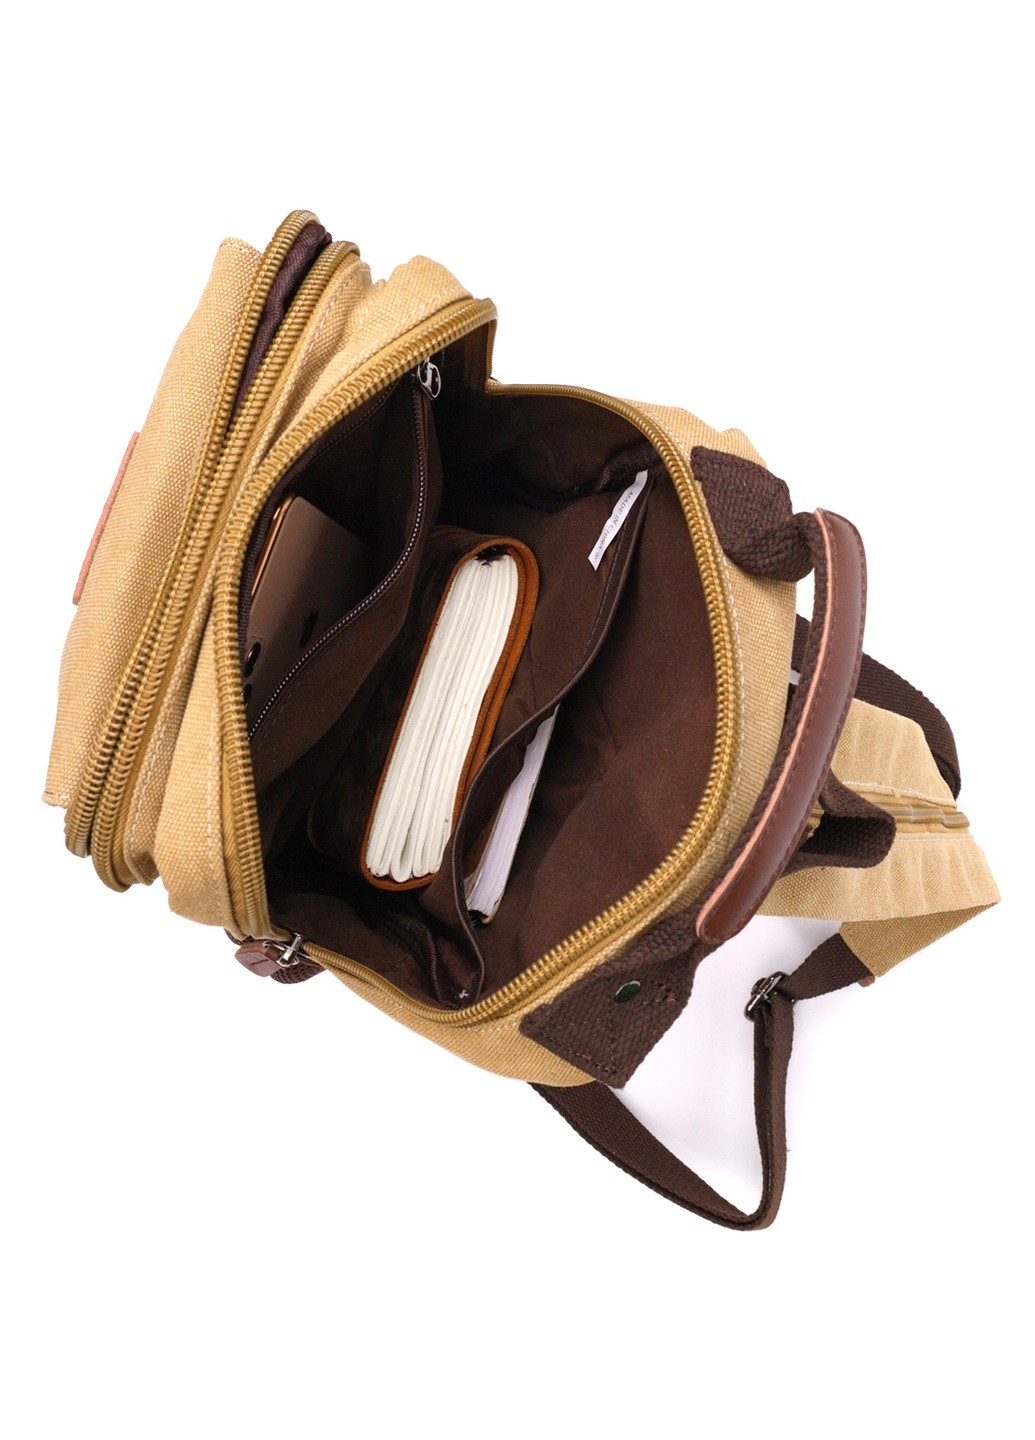 Оригинальный текстильный рюкзак с уплотненной спинкой и отделением для планшета 22171 Песочный Vintage (267925285)